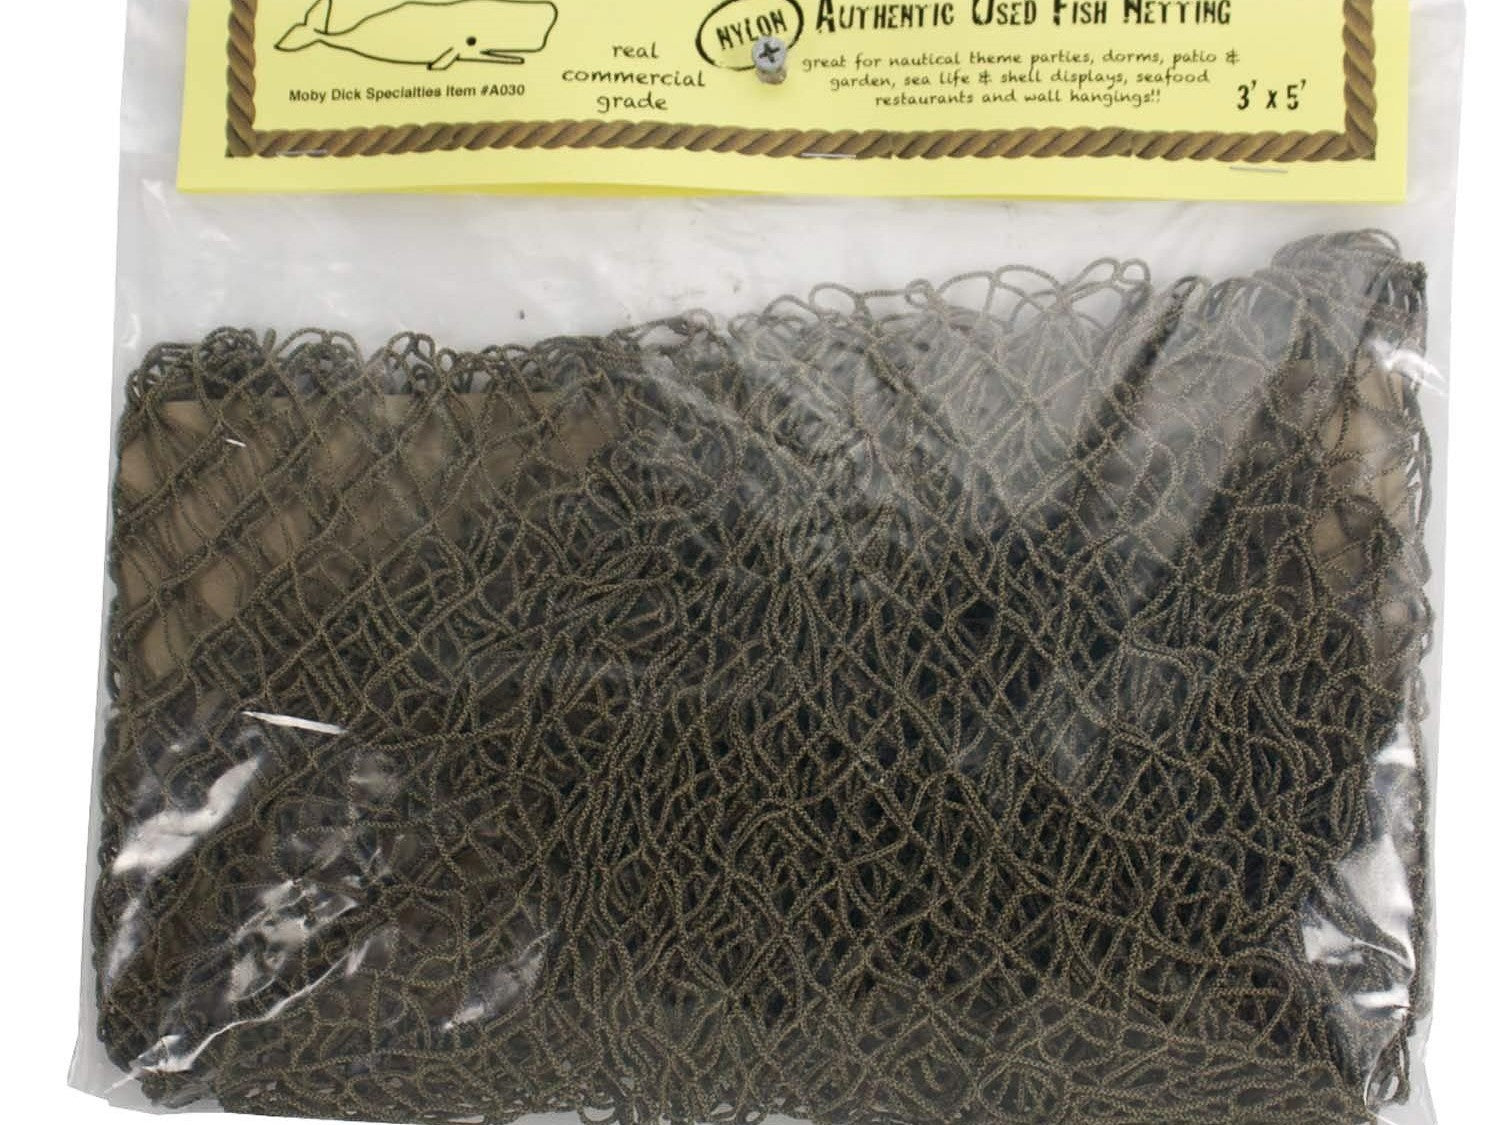 Authentic Fish Net Décor, Commercial Fishing Net, Decorative